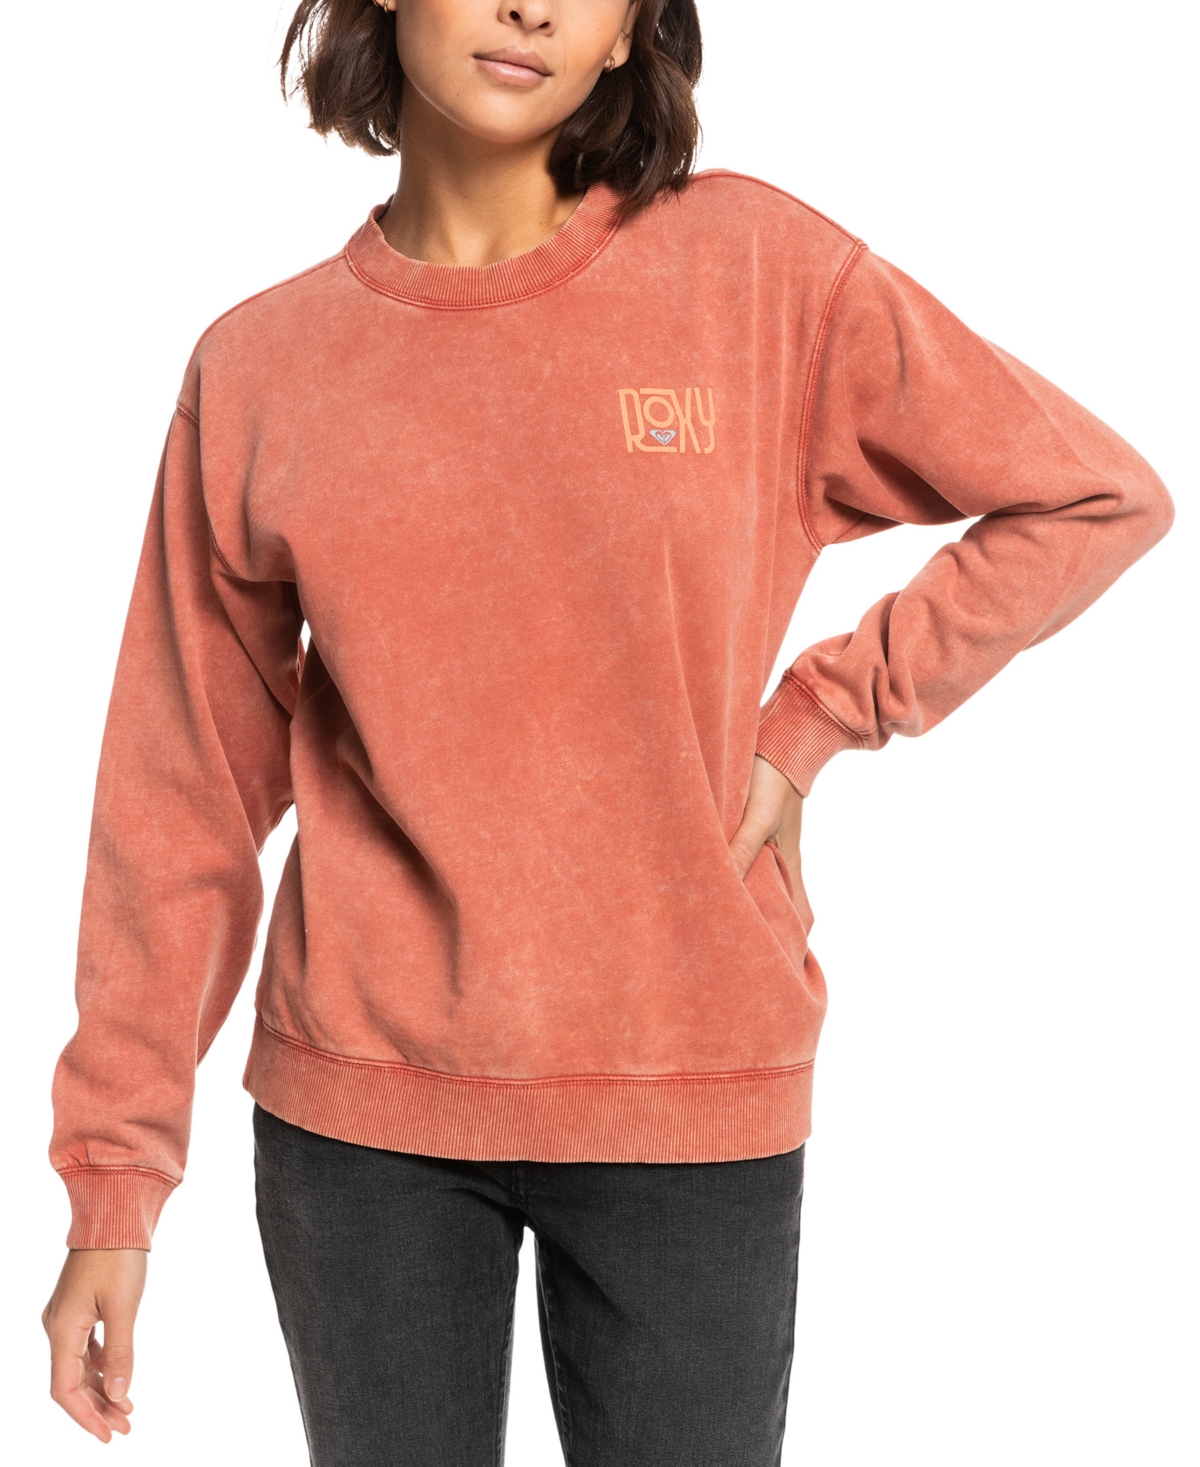  Roxy Juniors' A True Story Long-Sleeve Sweatshirt